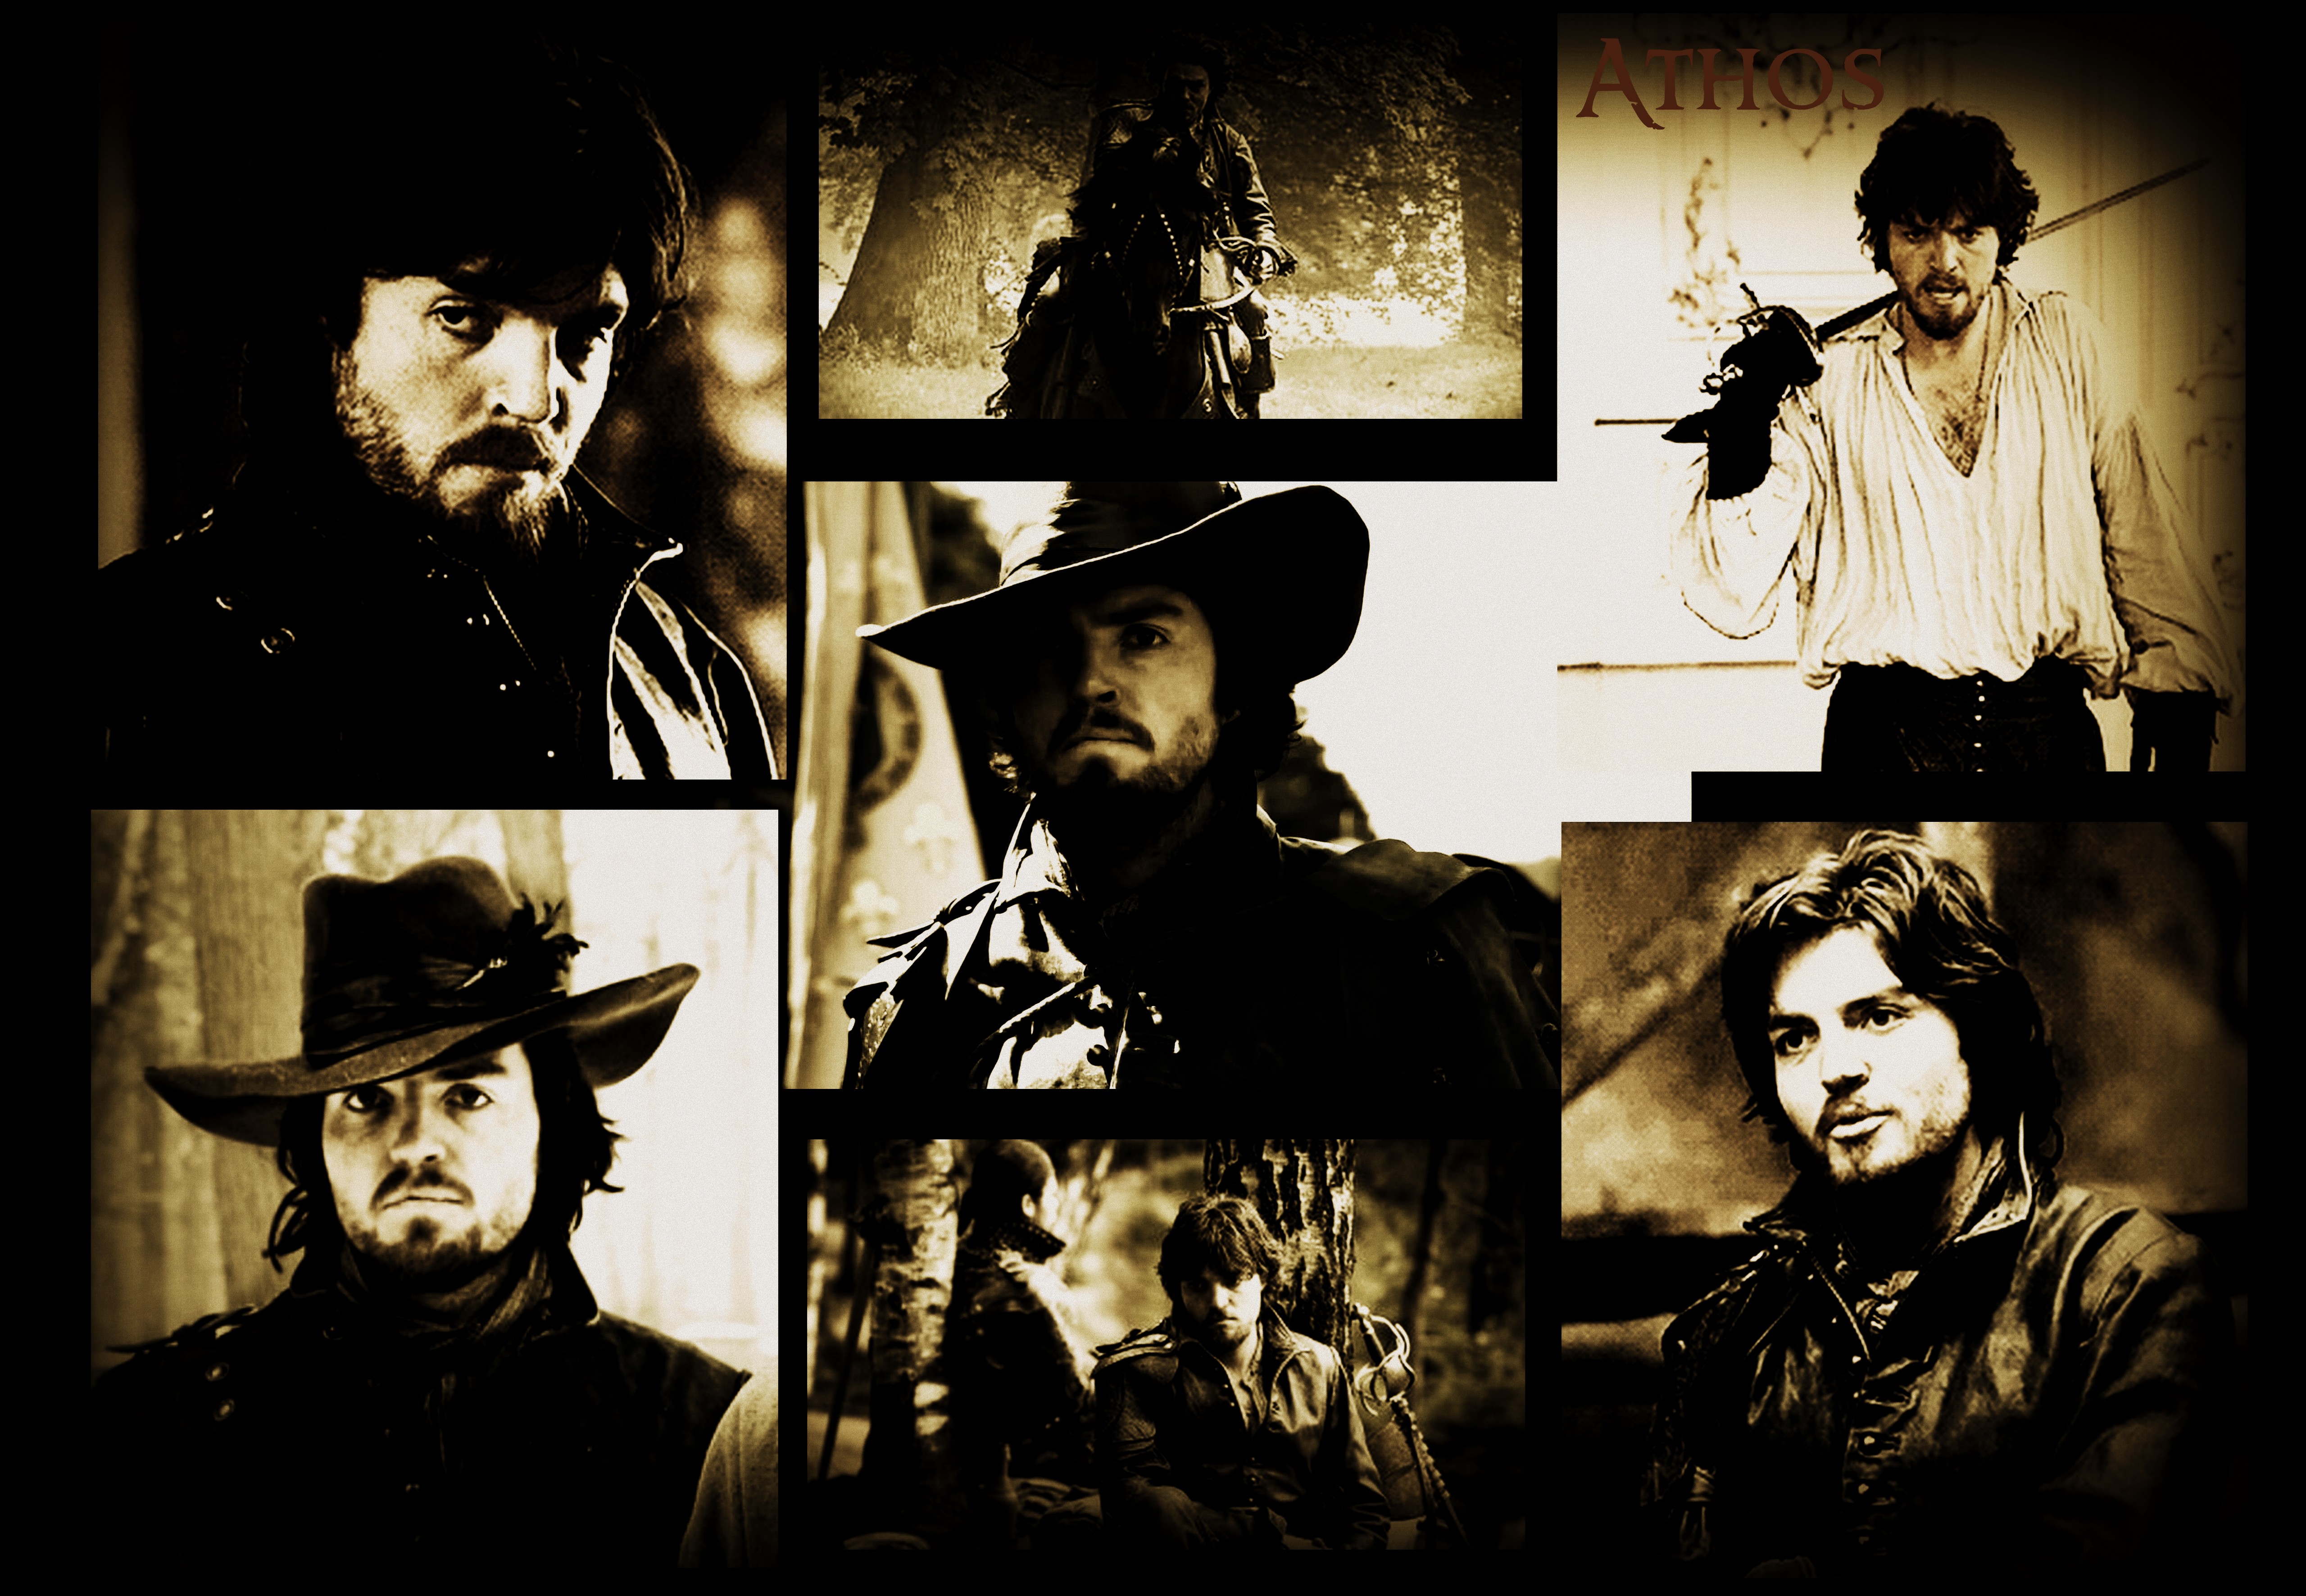 ATHOS The Musketeers - Musketeers Athos 16.jpg